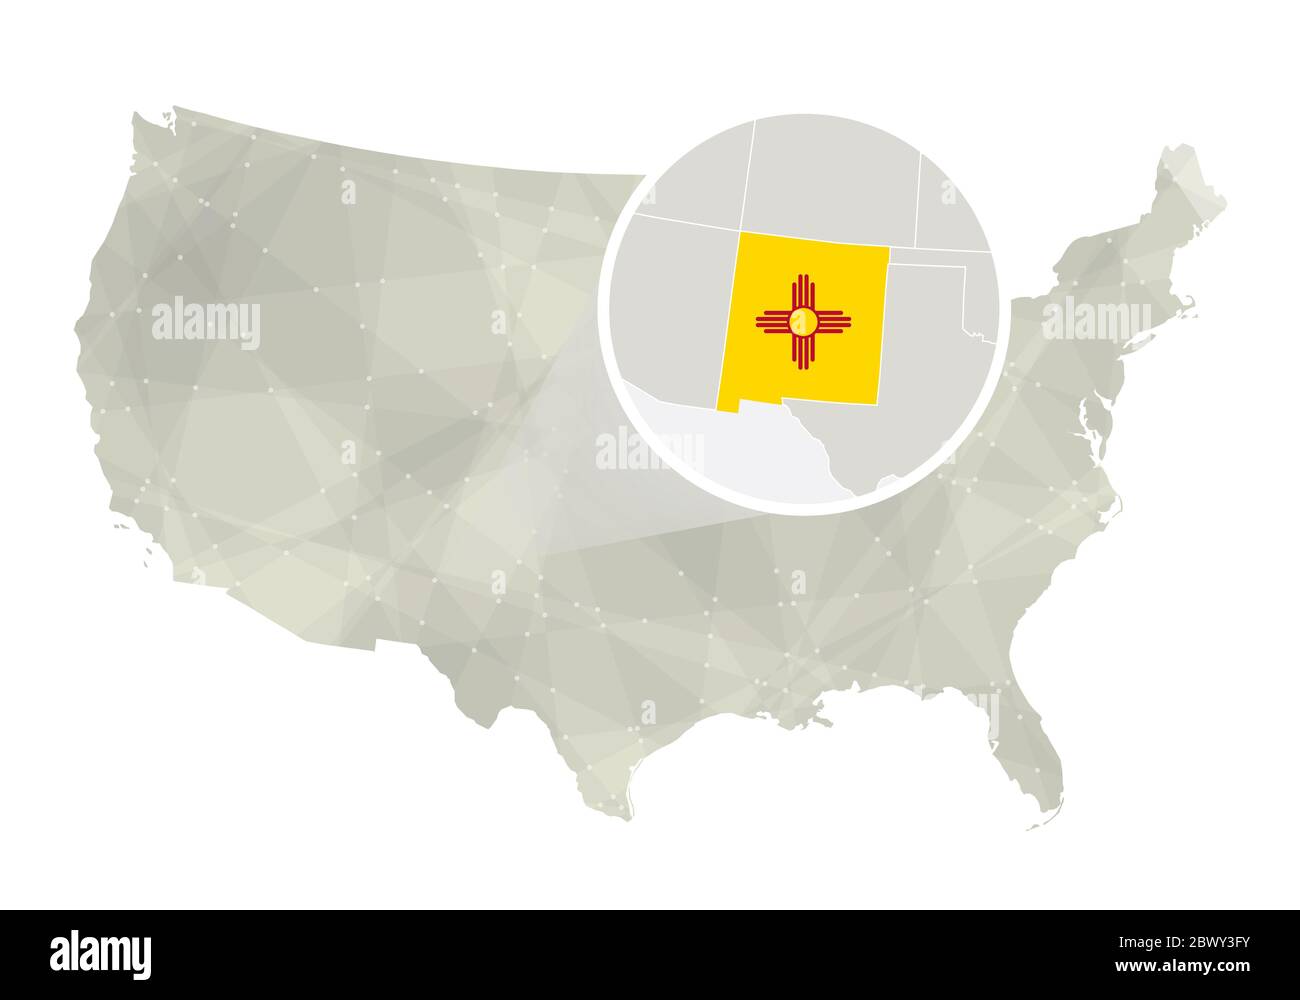 Polygonale abstrakte USA-Karte mit vergrößertem Staat New Mexico. Karte und Flagge von New Mexico. VEKTORKARTE USA und New Mexico. Vektorgrafik. Stock Vektor